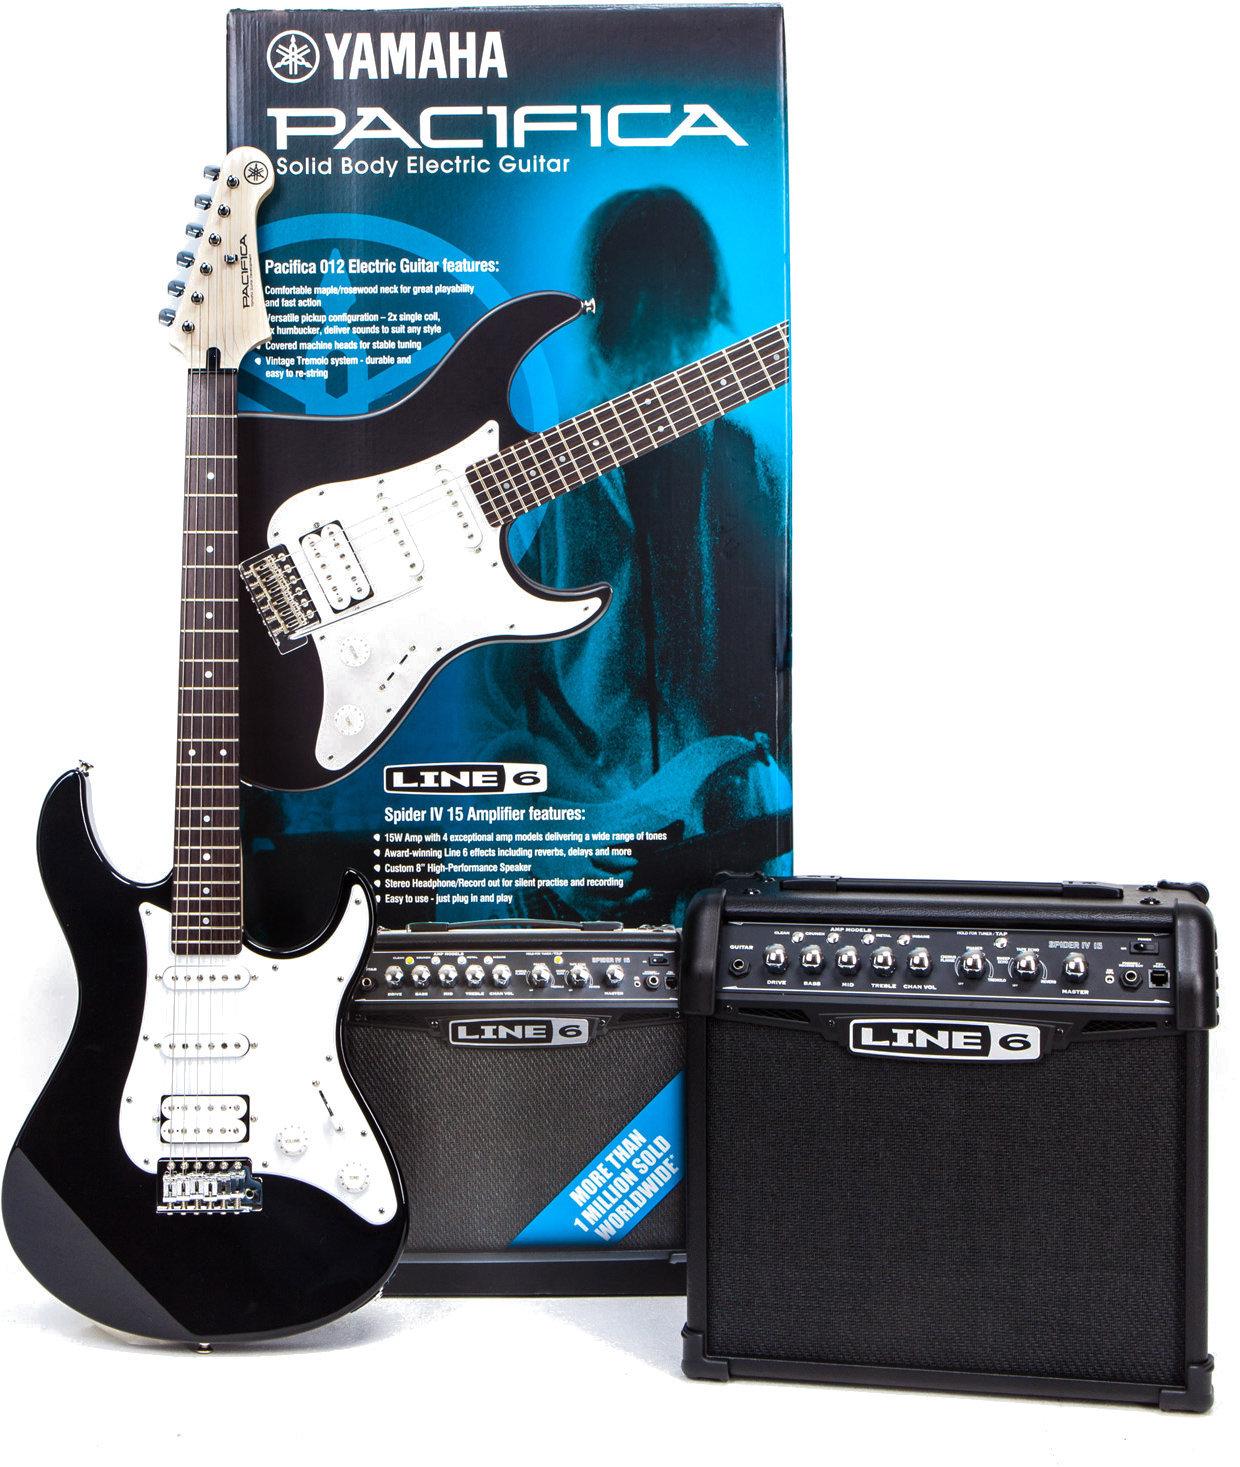 E-Gitarre Yamaha Pacifica 012 & Spider V 20